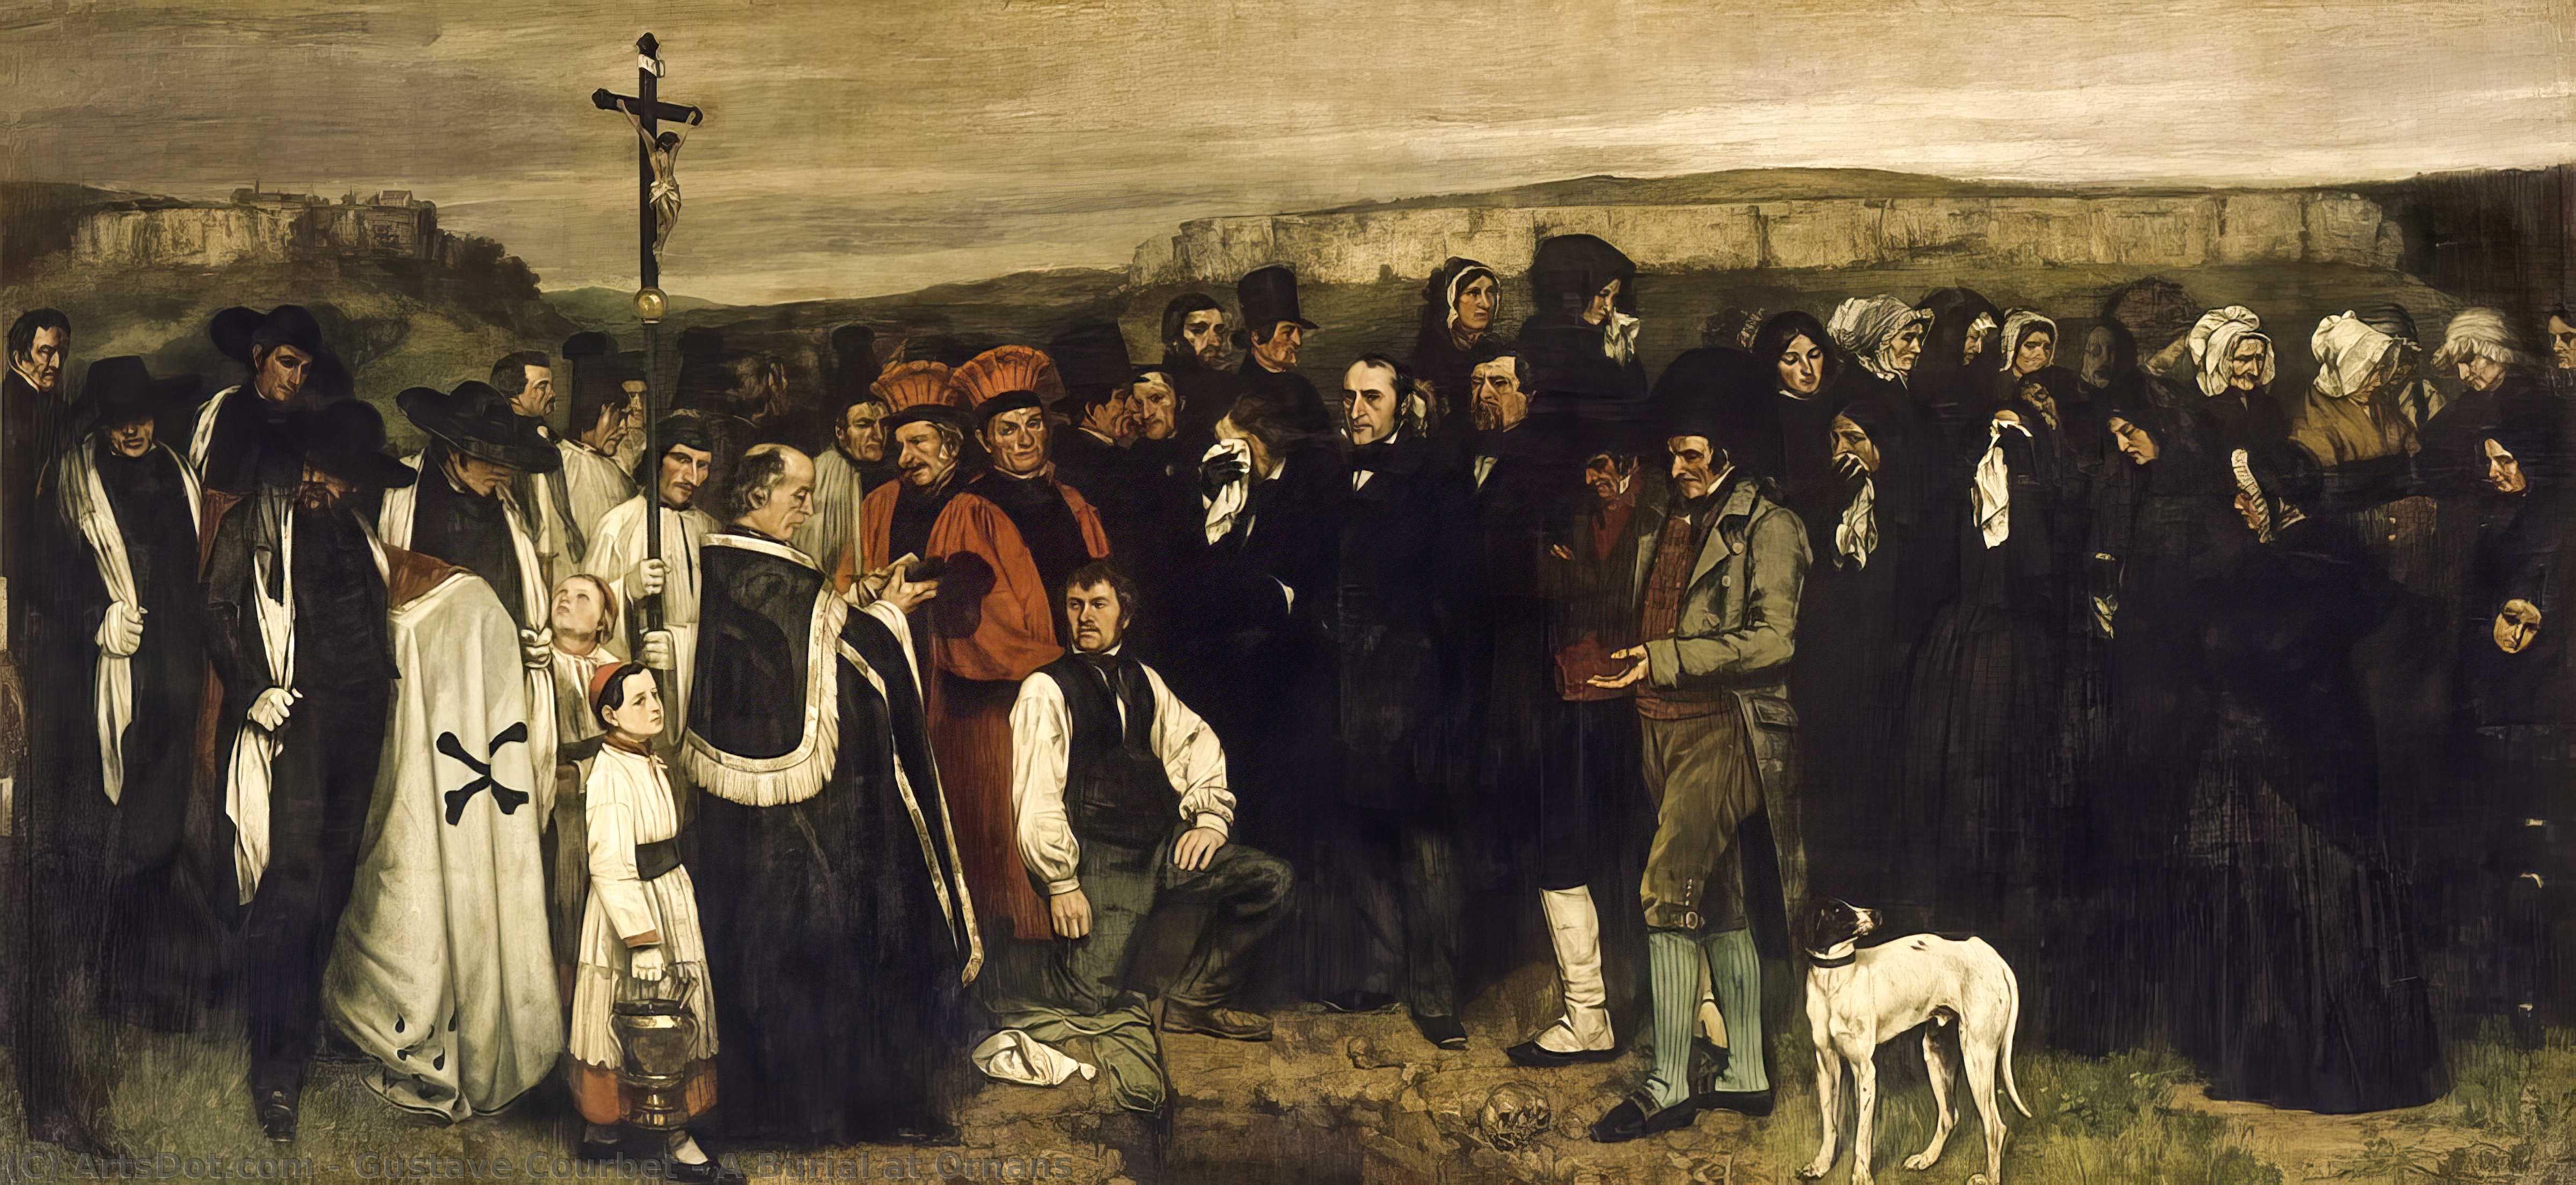 WikiOO.org - Энциклопедия изобразительного искусства - Живопись, Картины  Gustave Courbet - погребение в орнане